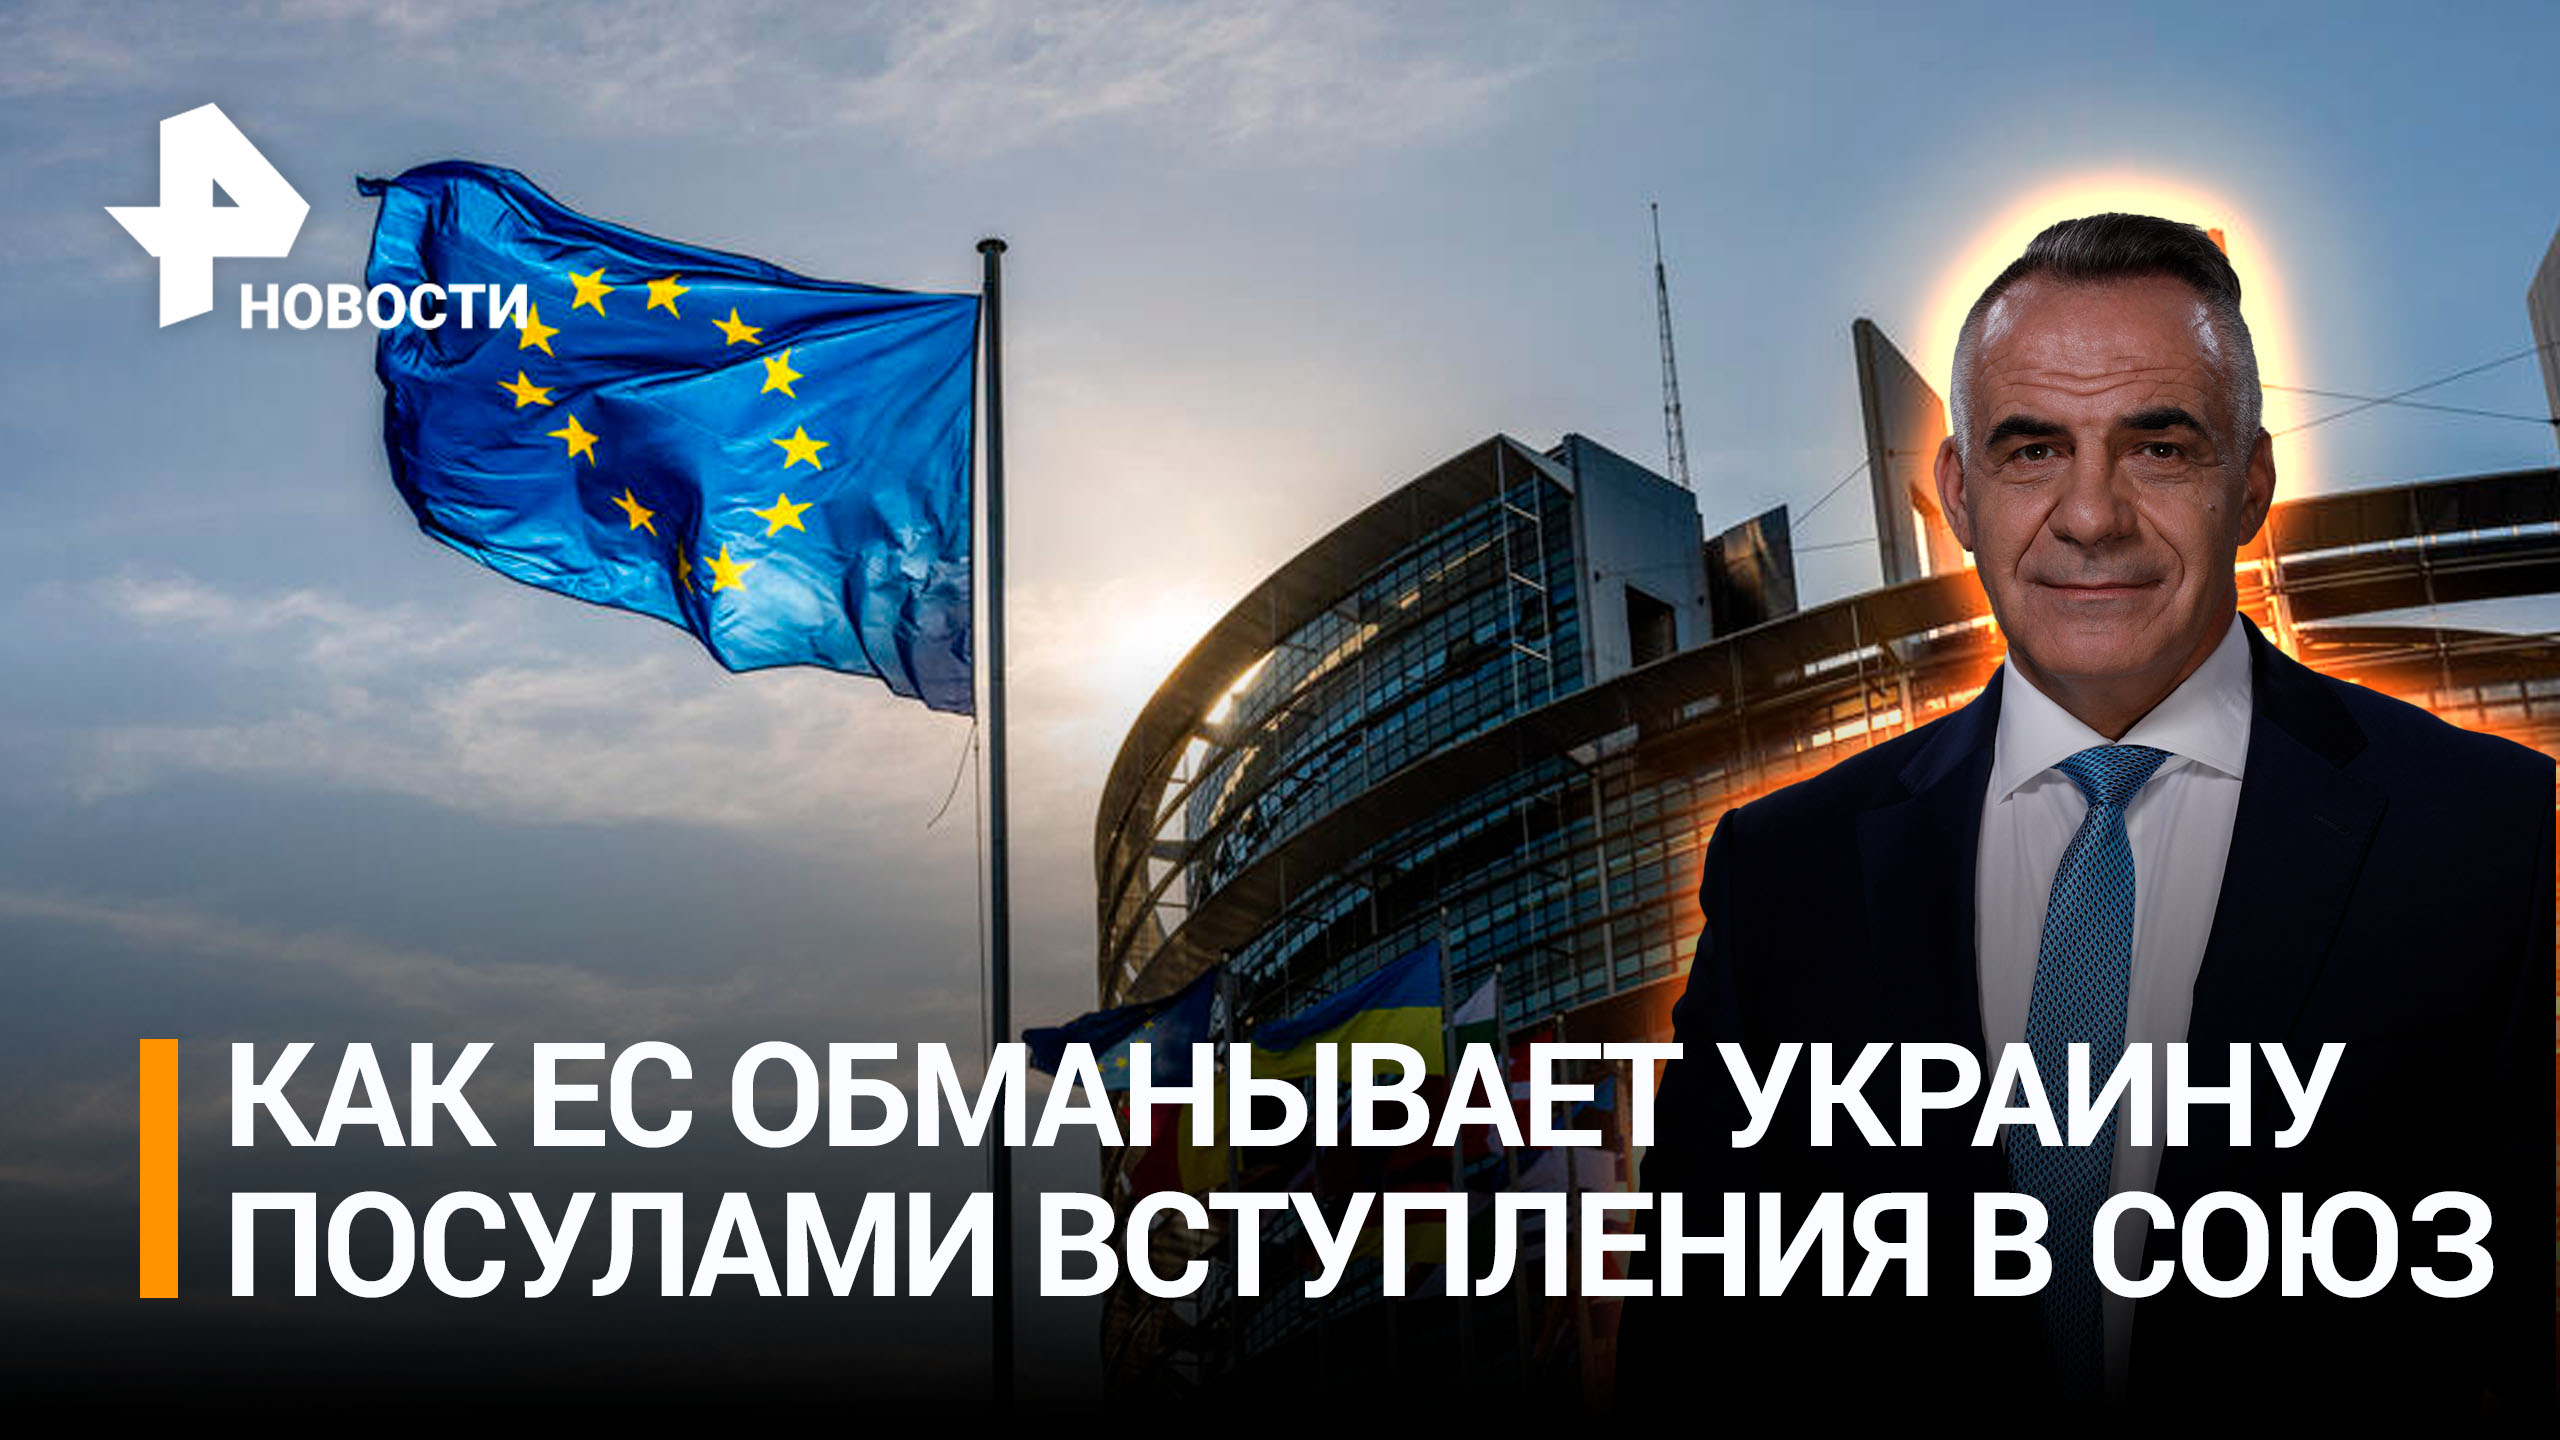 Операция "Манипуляция": как Украине дают ложные надежды на вступление в ЕС / ИТОГИ c Петром Марченко